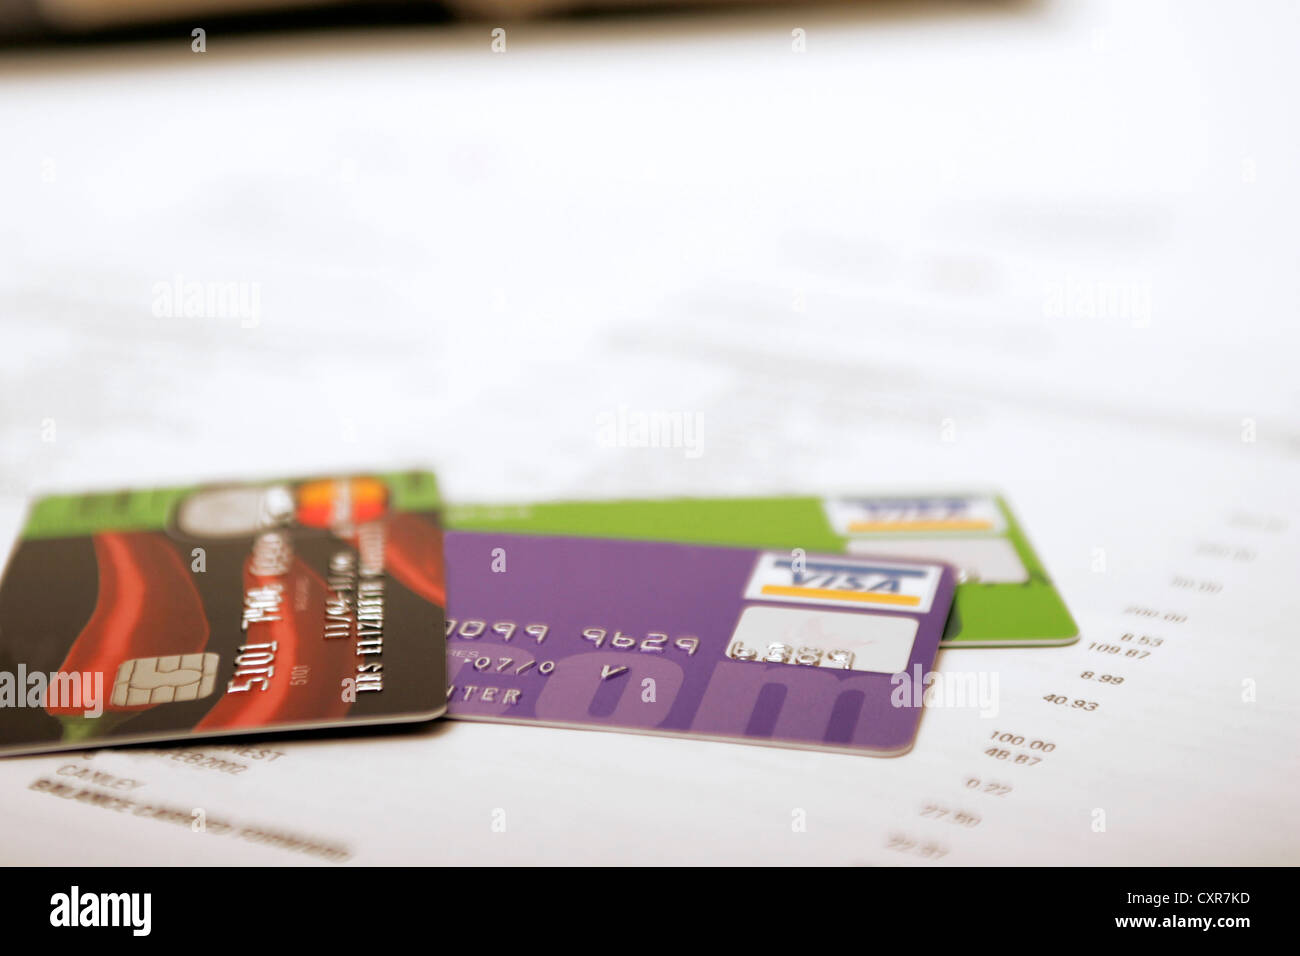 Credito visa debit cards su estratto conto bancario lunga lista degli acquisti Foto Stock